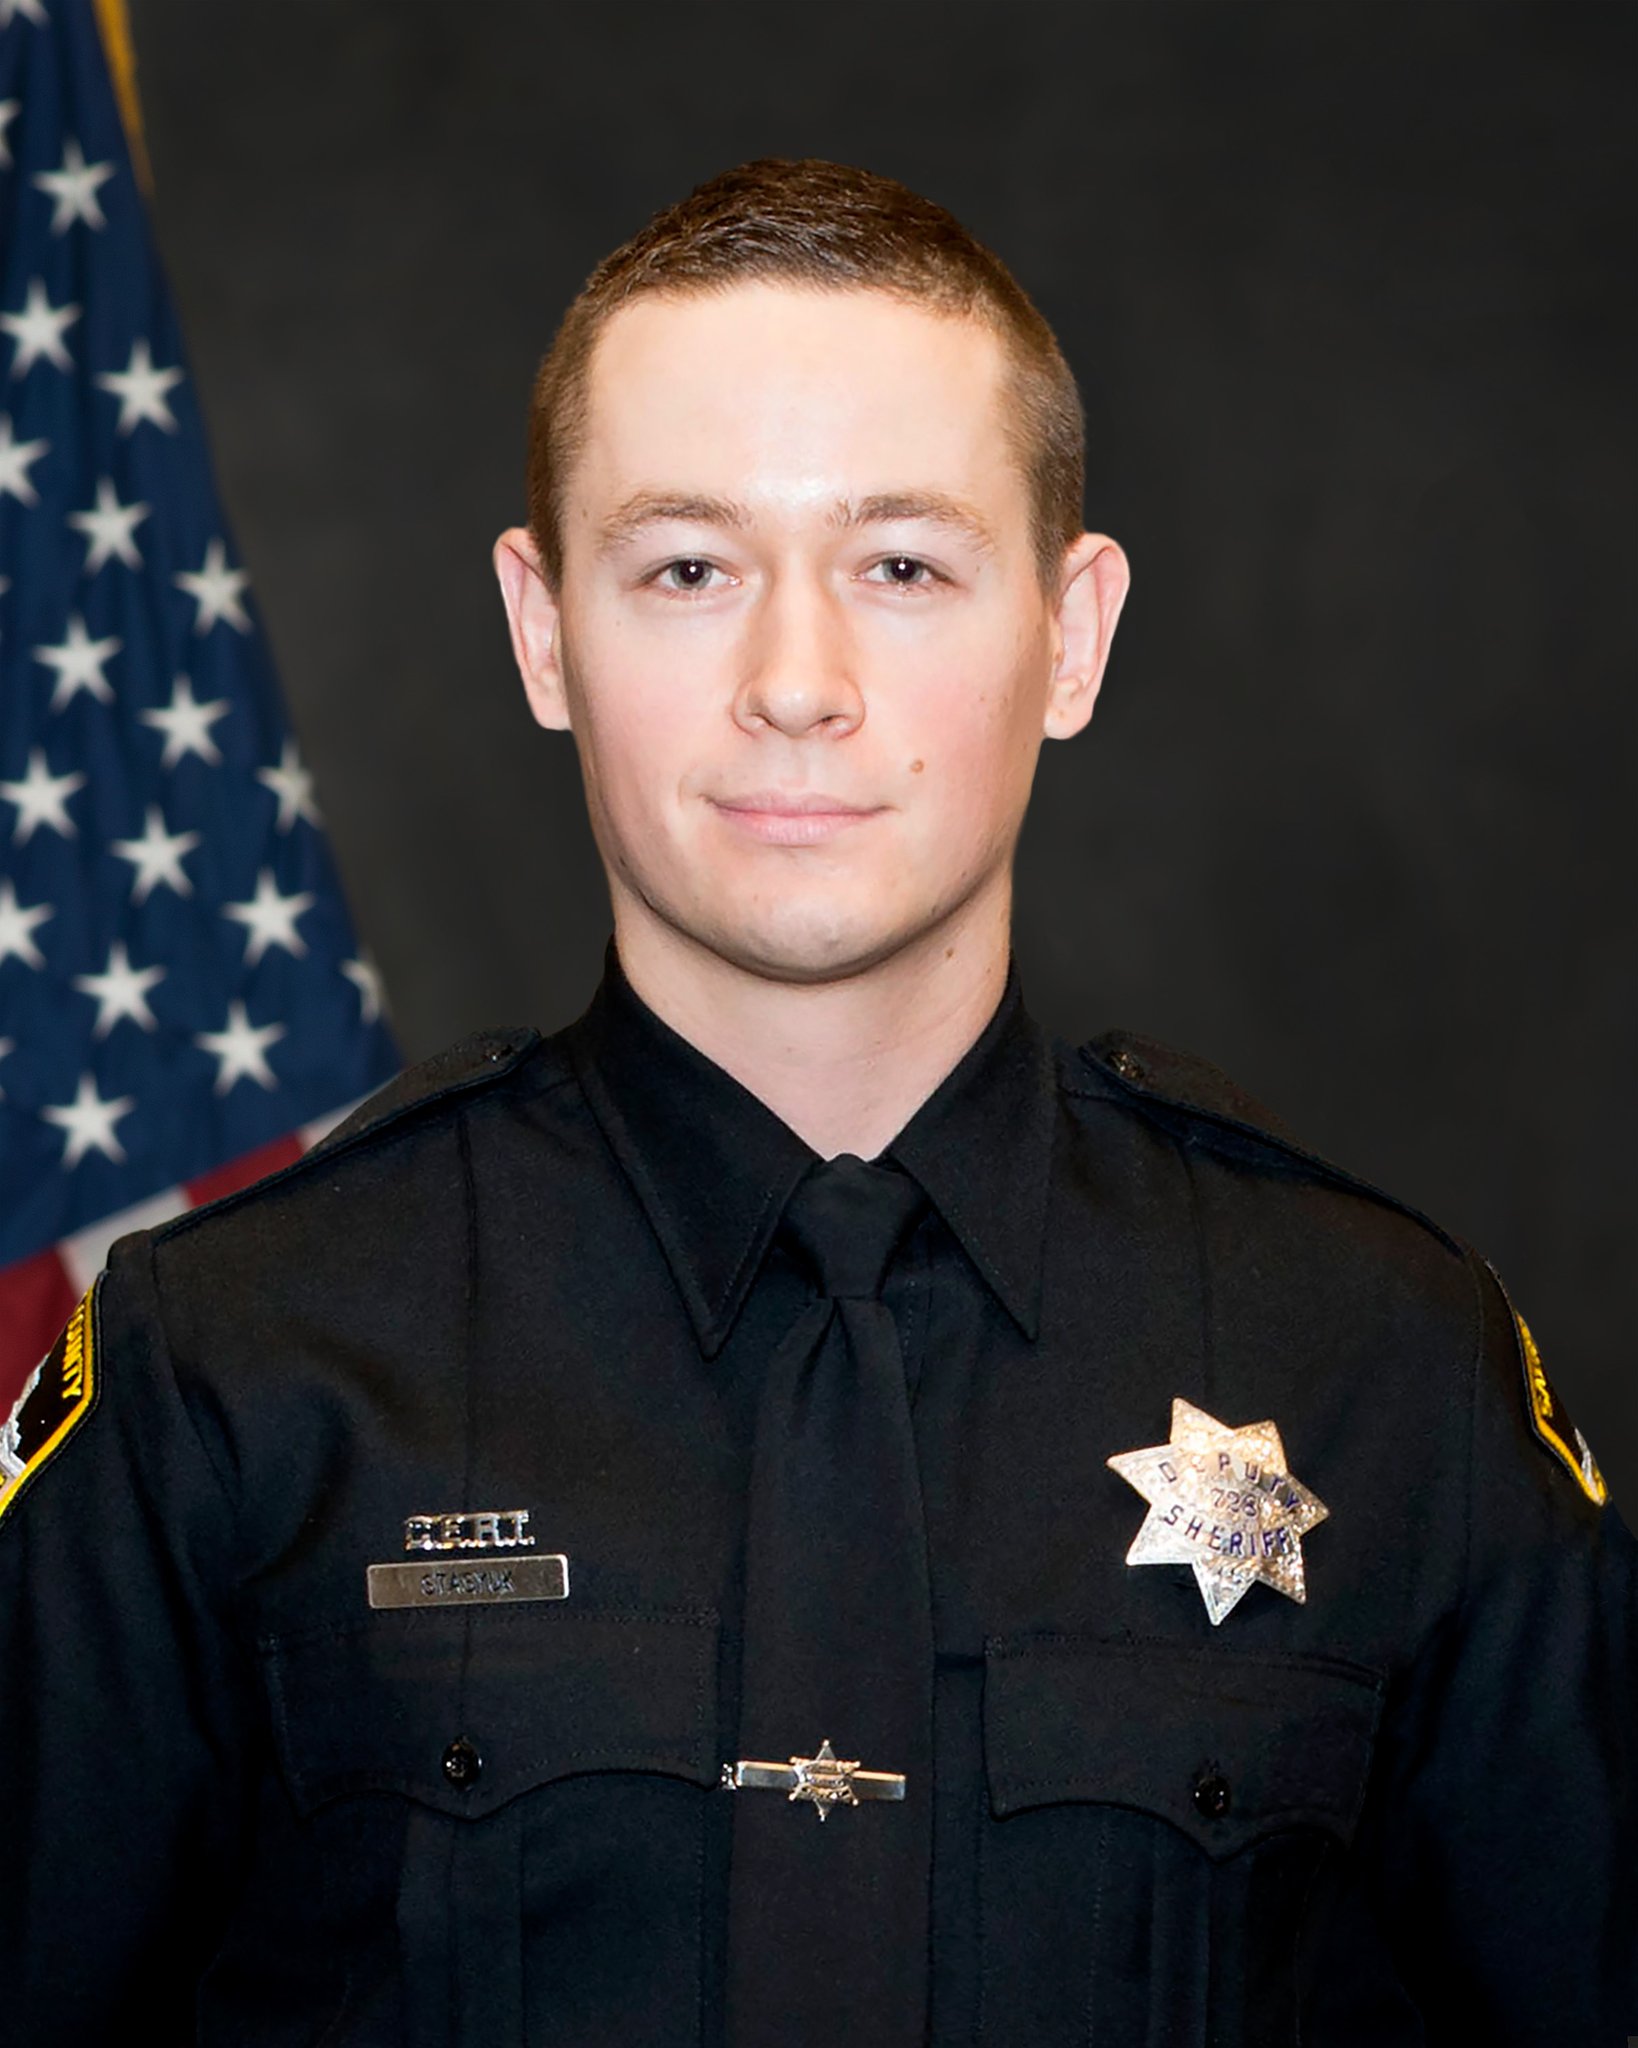 Deputy Sheriff Mark V. Stasyuk | Sacramento County Sheriff's Office, California